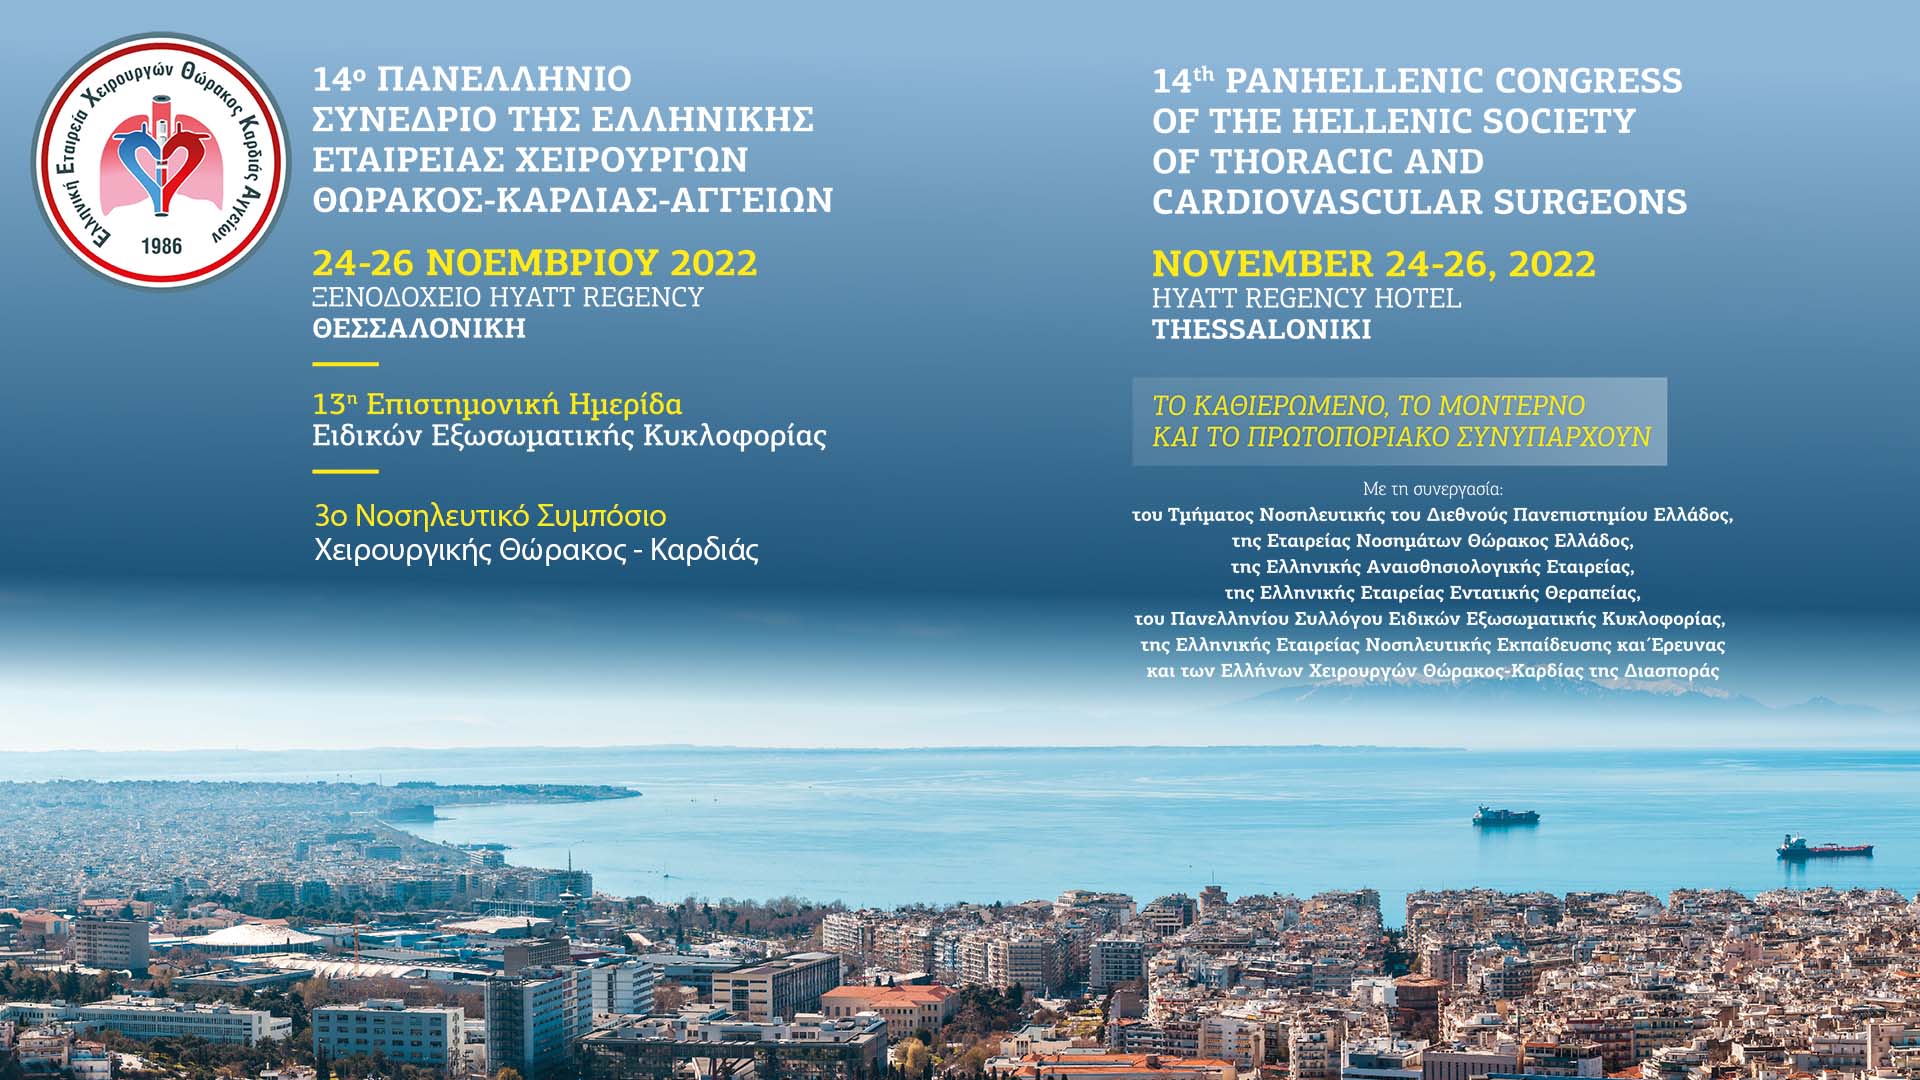 14ο Πανελλήνιο Συνέδριο της Ελληνικής Εταιρείας Χειρουργών Θώρακος-Καρδιάς-Αγγείων